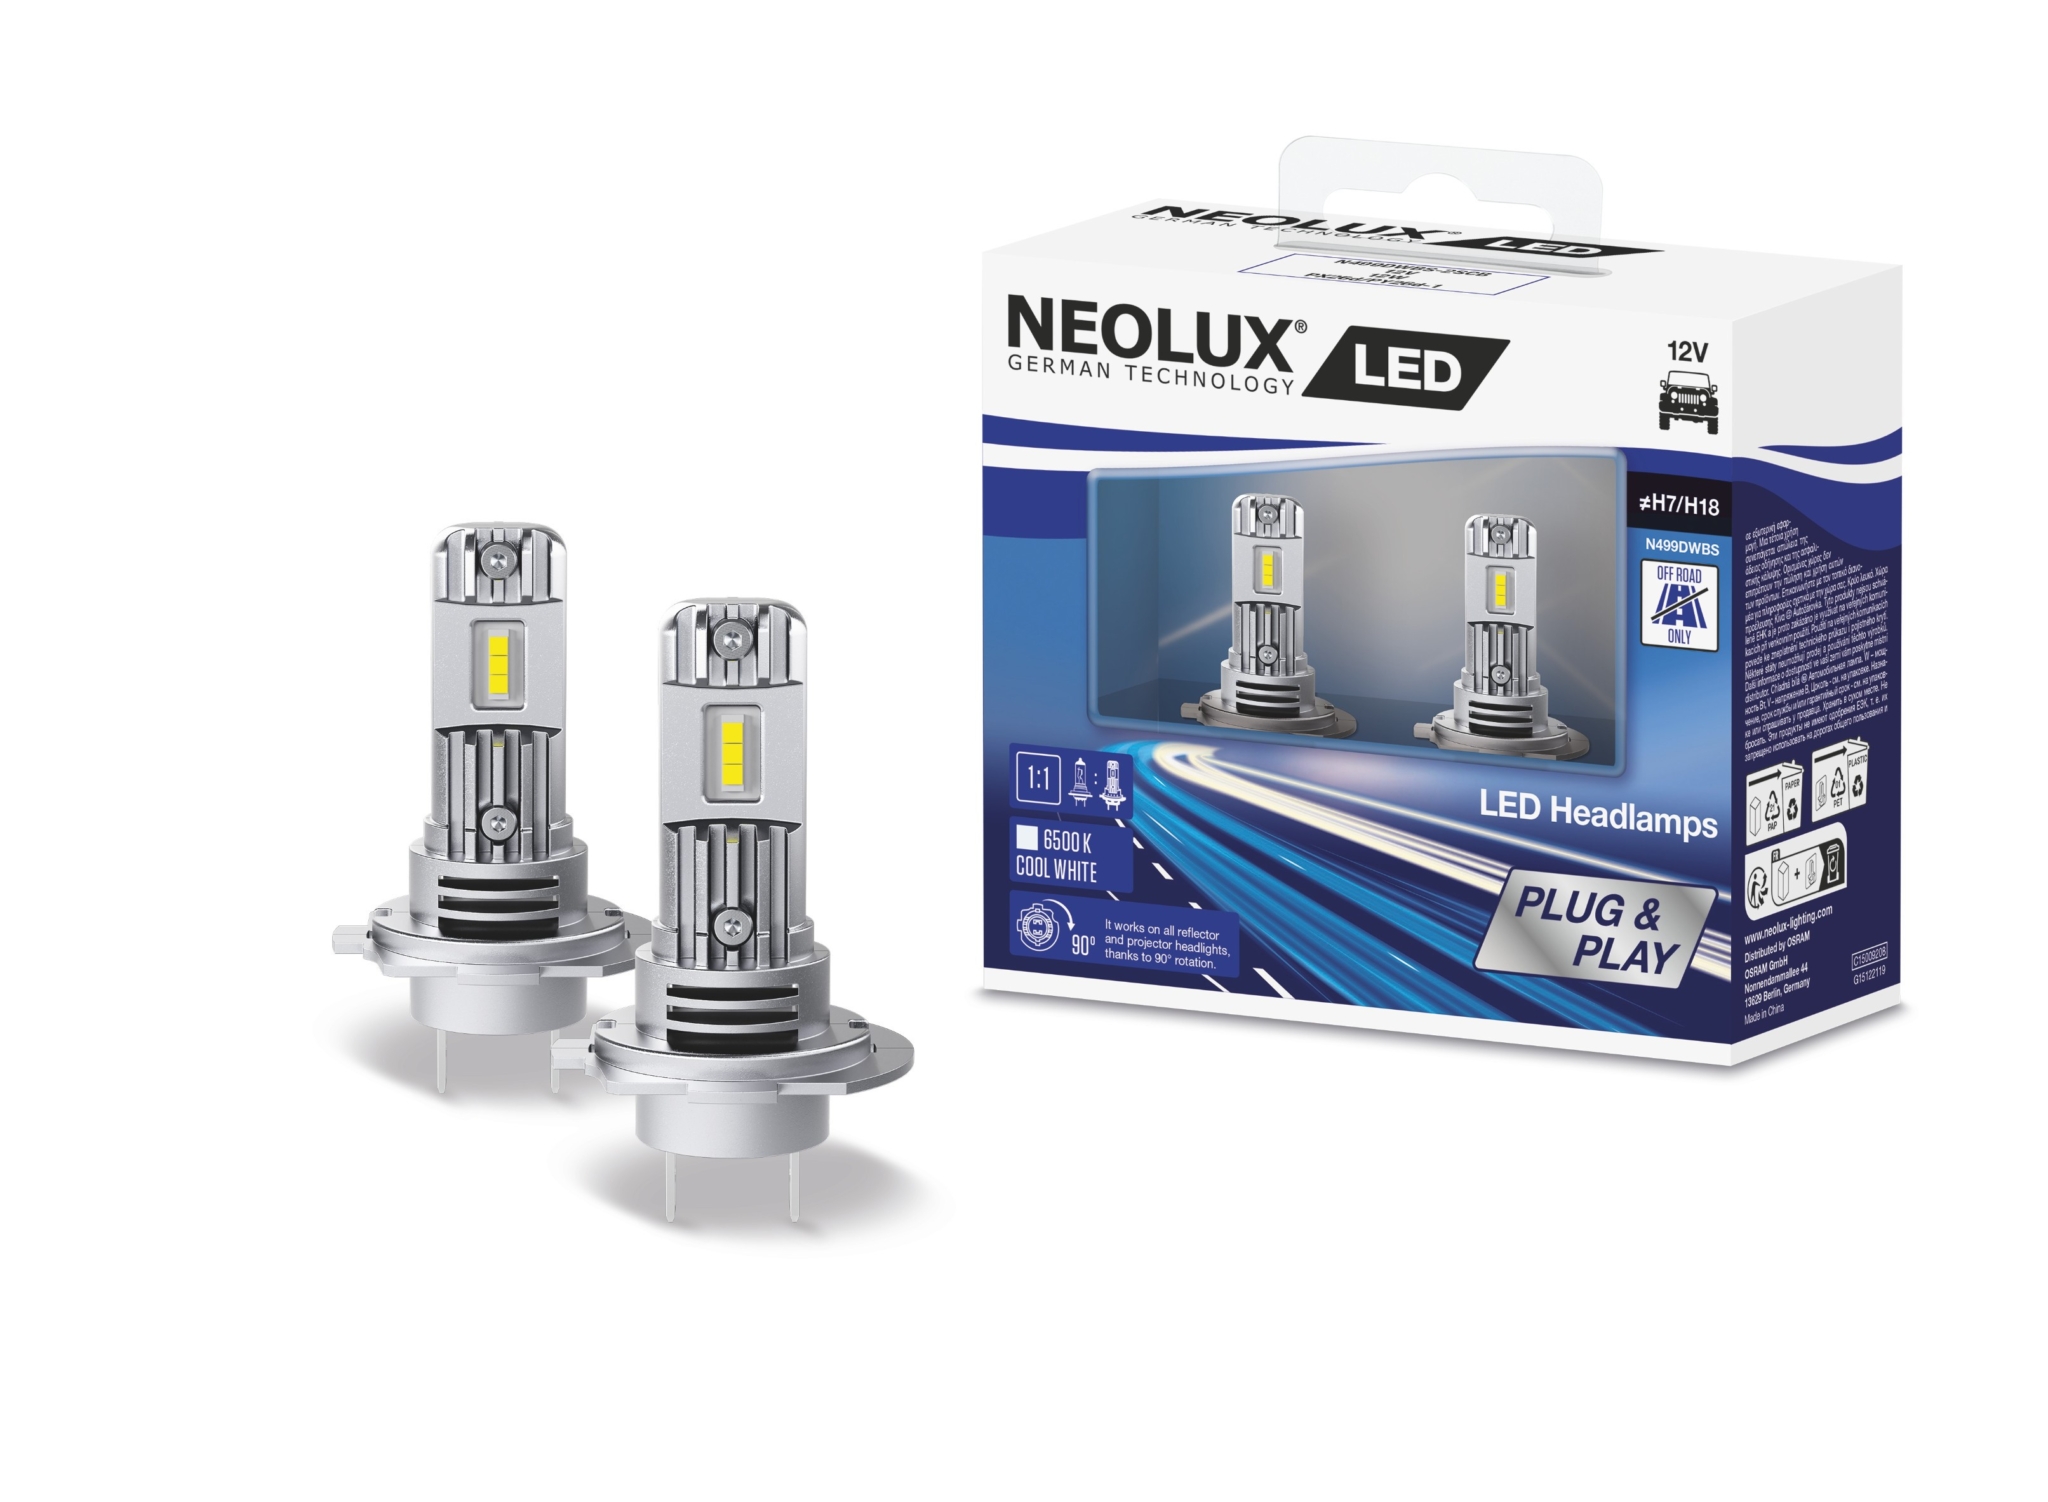 Neolux to enter off-road LED market